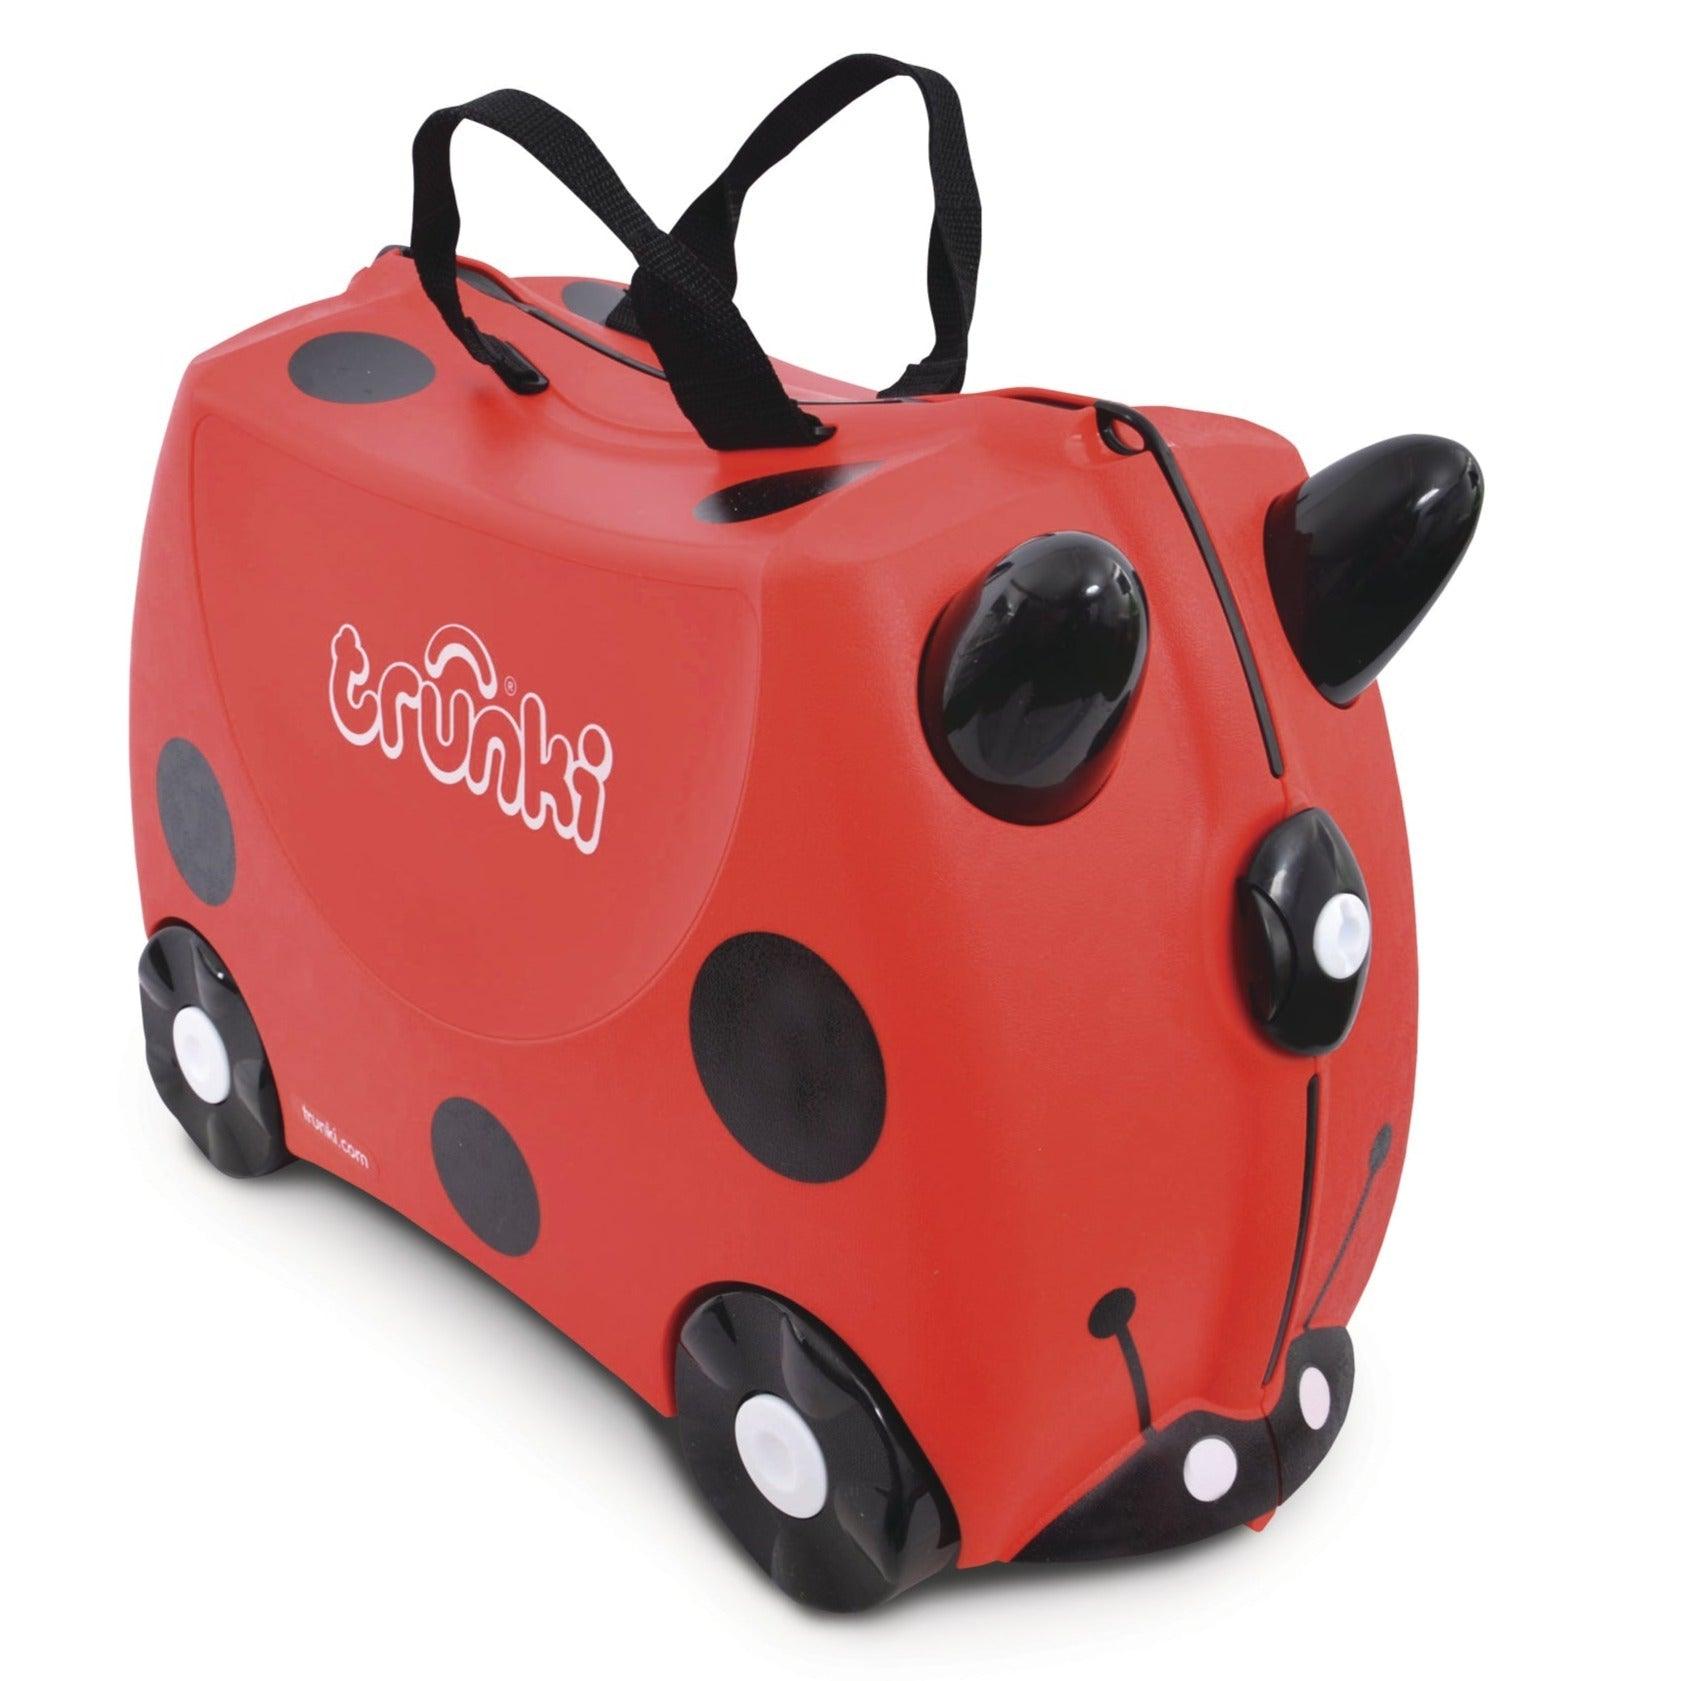 Trunki: riding suitcase for kids ladybug Harley